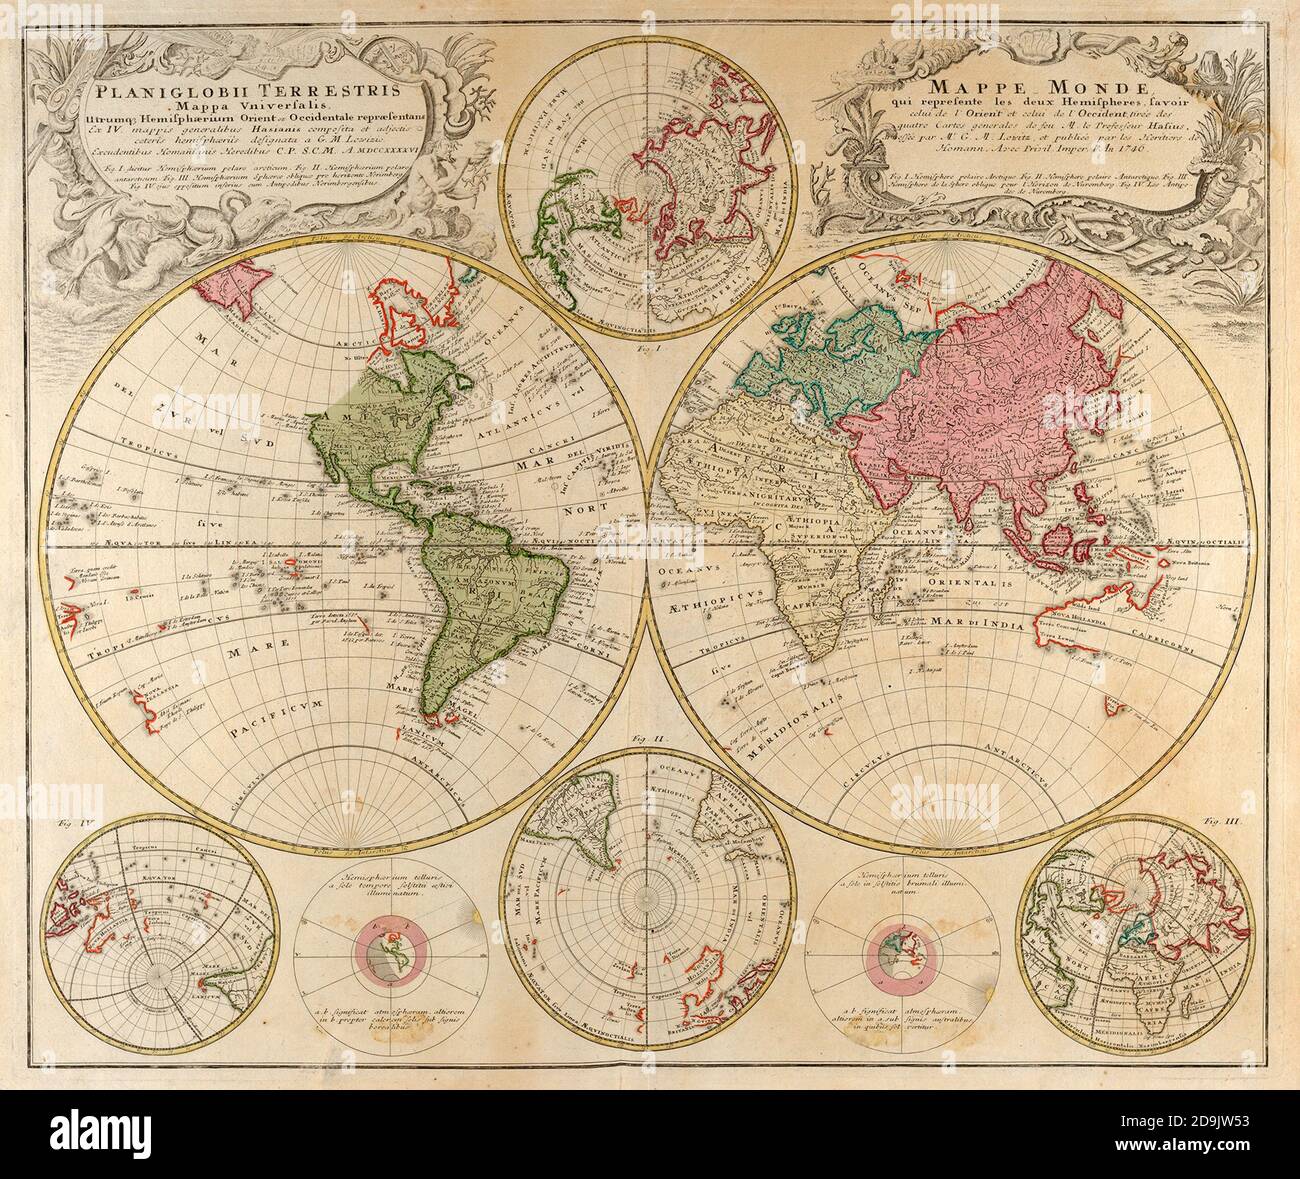 Planiglobii Terrestris Mappa Universalis. Carte du monde en couleur imprimée en Allemagne en 1746 Banque D'Images